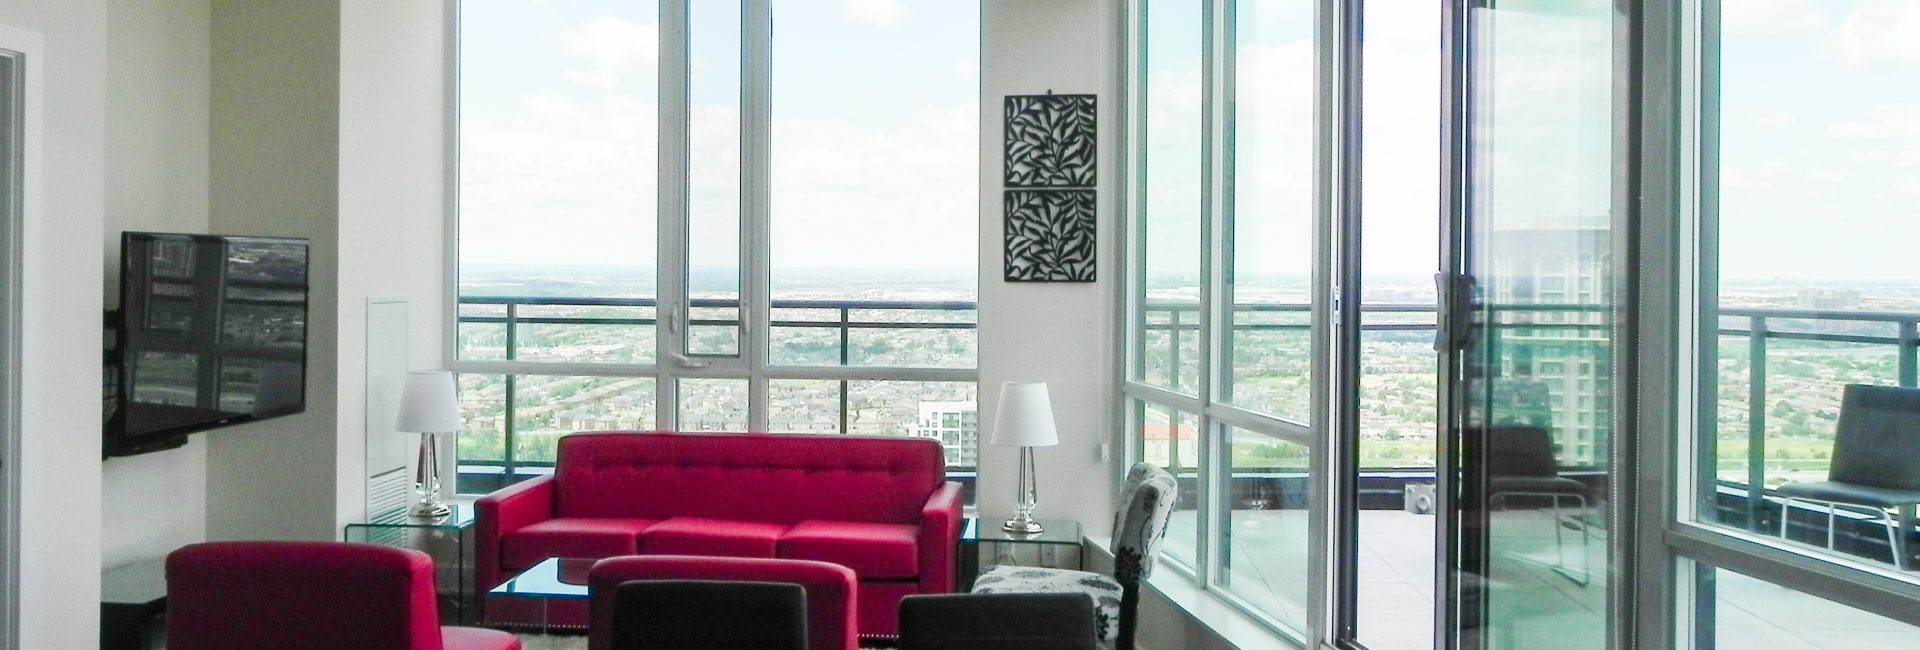 Penthouse luxury Suite